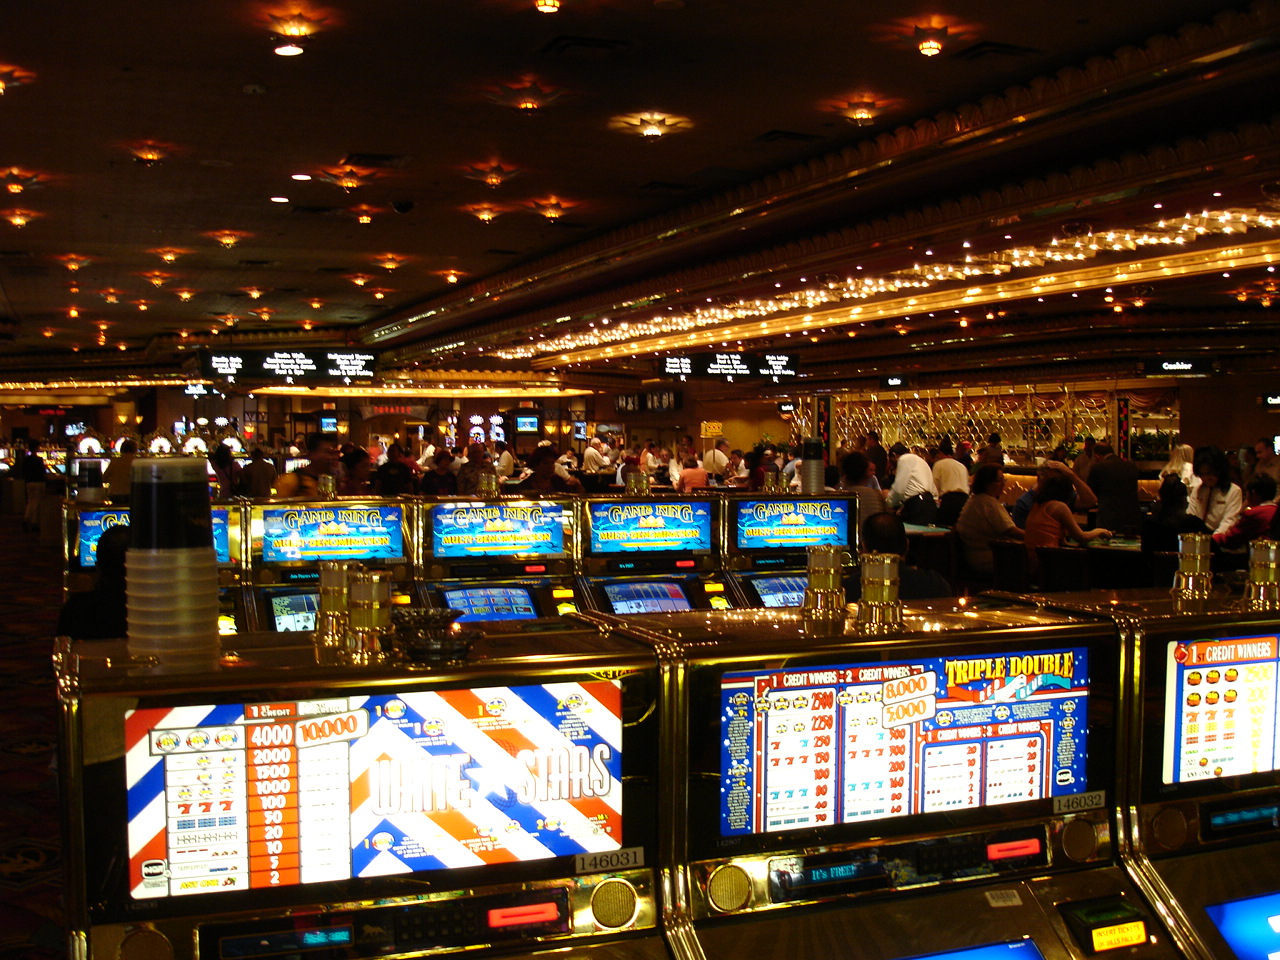 Азартные игры как одна из форм девиации